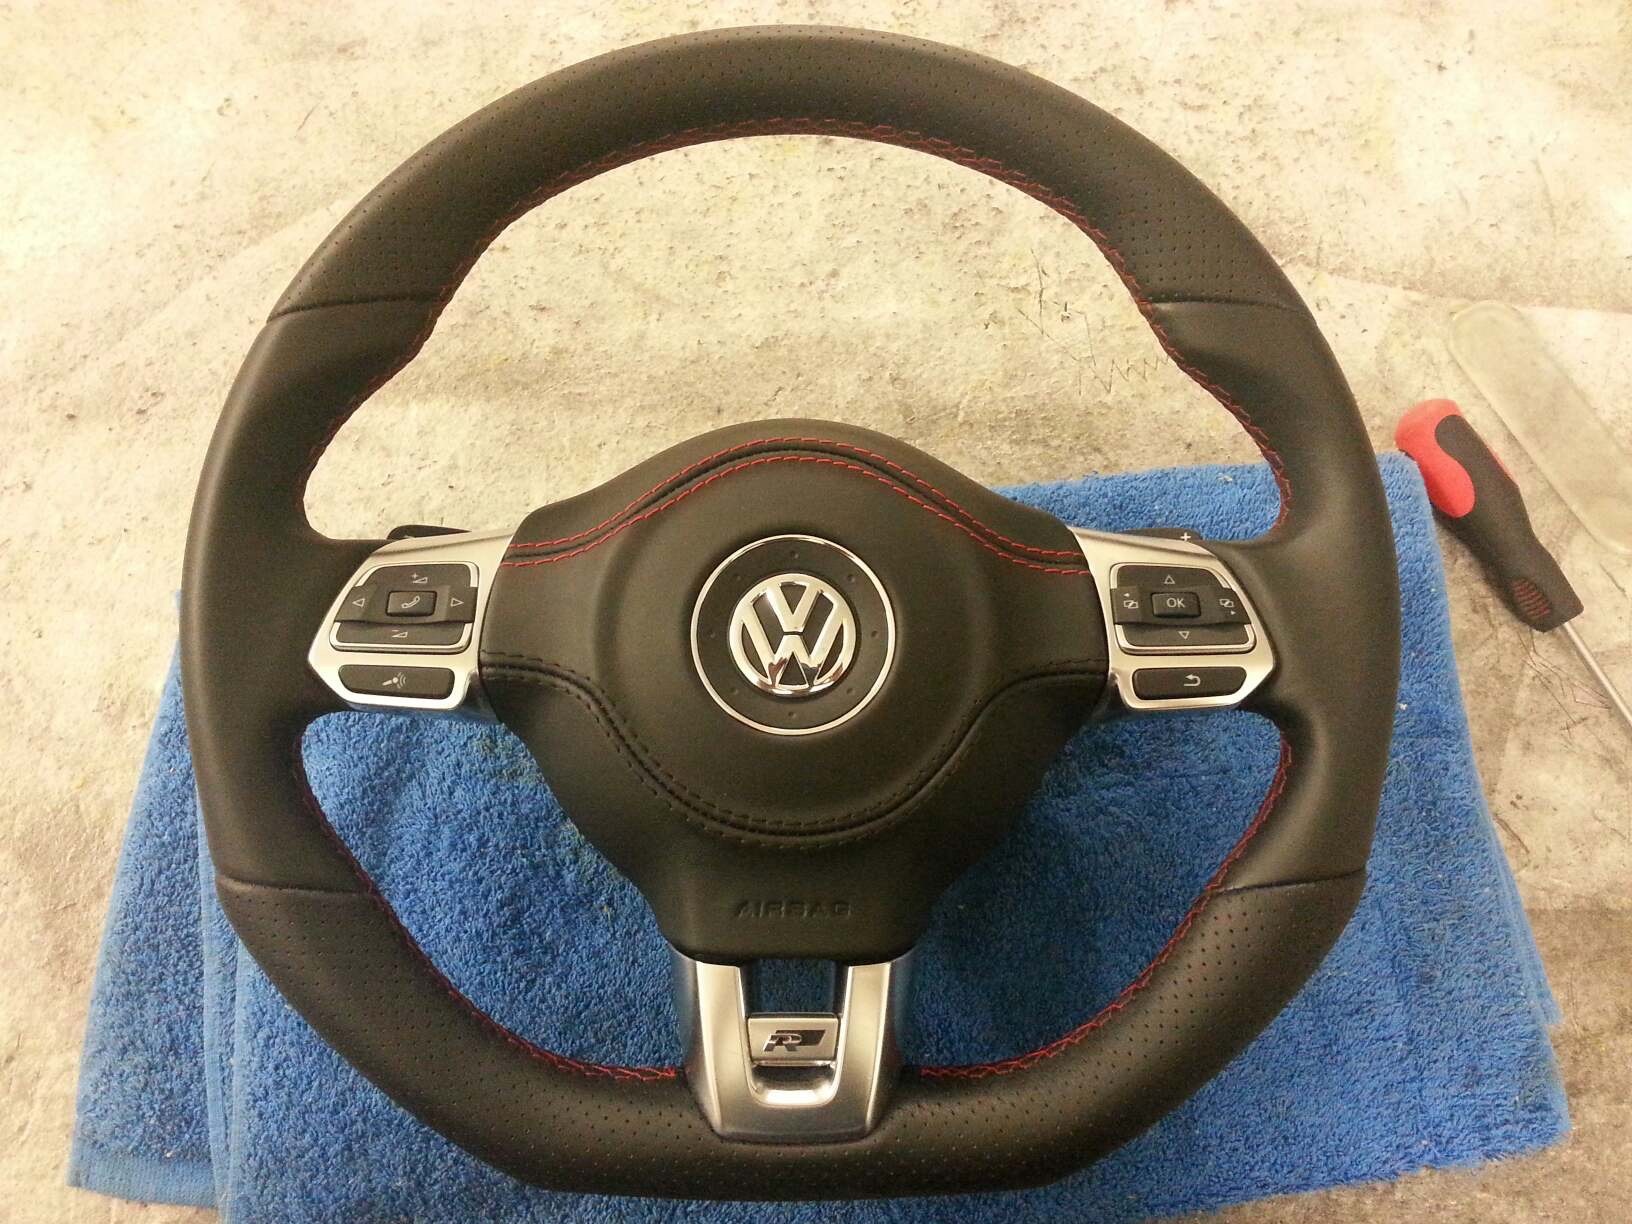 Подушка пассат б6. Руль Фольксваген Пассат б6. Руль Фольксваген Пассат б7. Volkswagen Passat руль 2013 airbag. Passat b6 airbag.